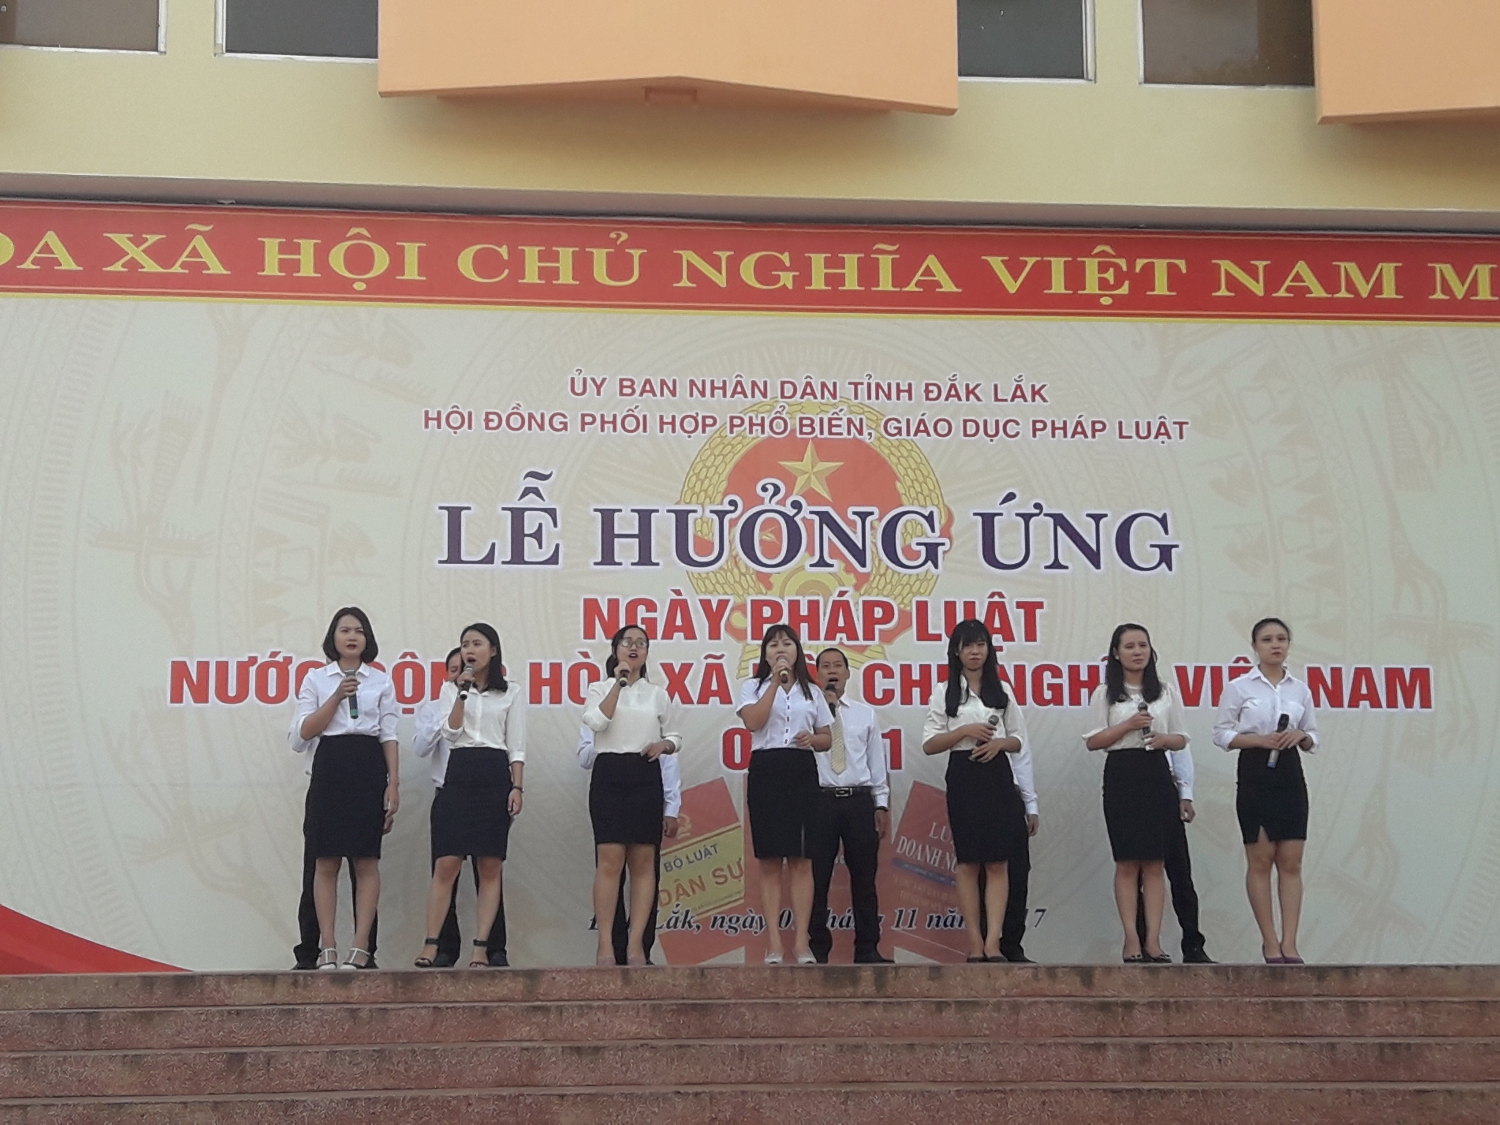 Sở Công thương tỉnh Đắk Lắk tham gia hưởng ứng ngày Pháp luật Việt Nam